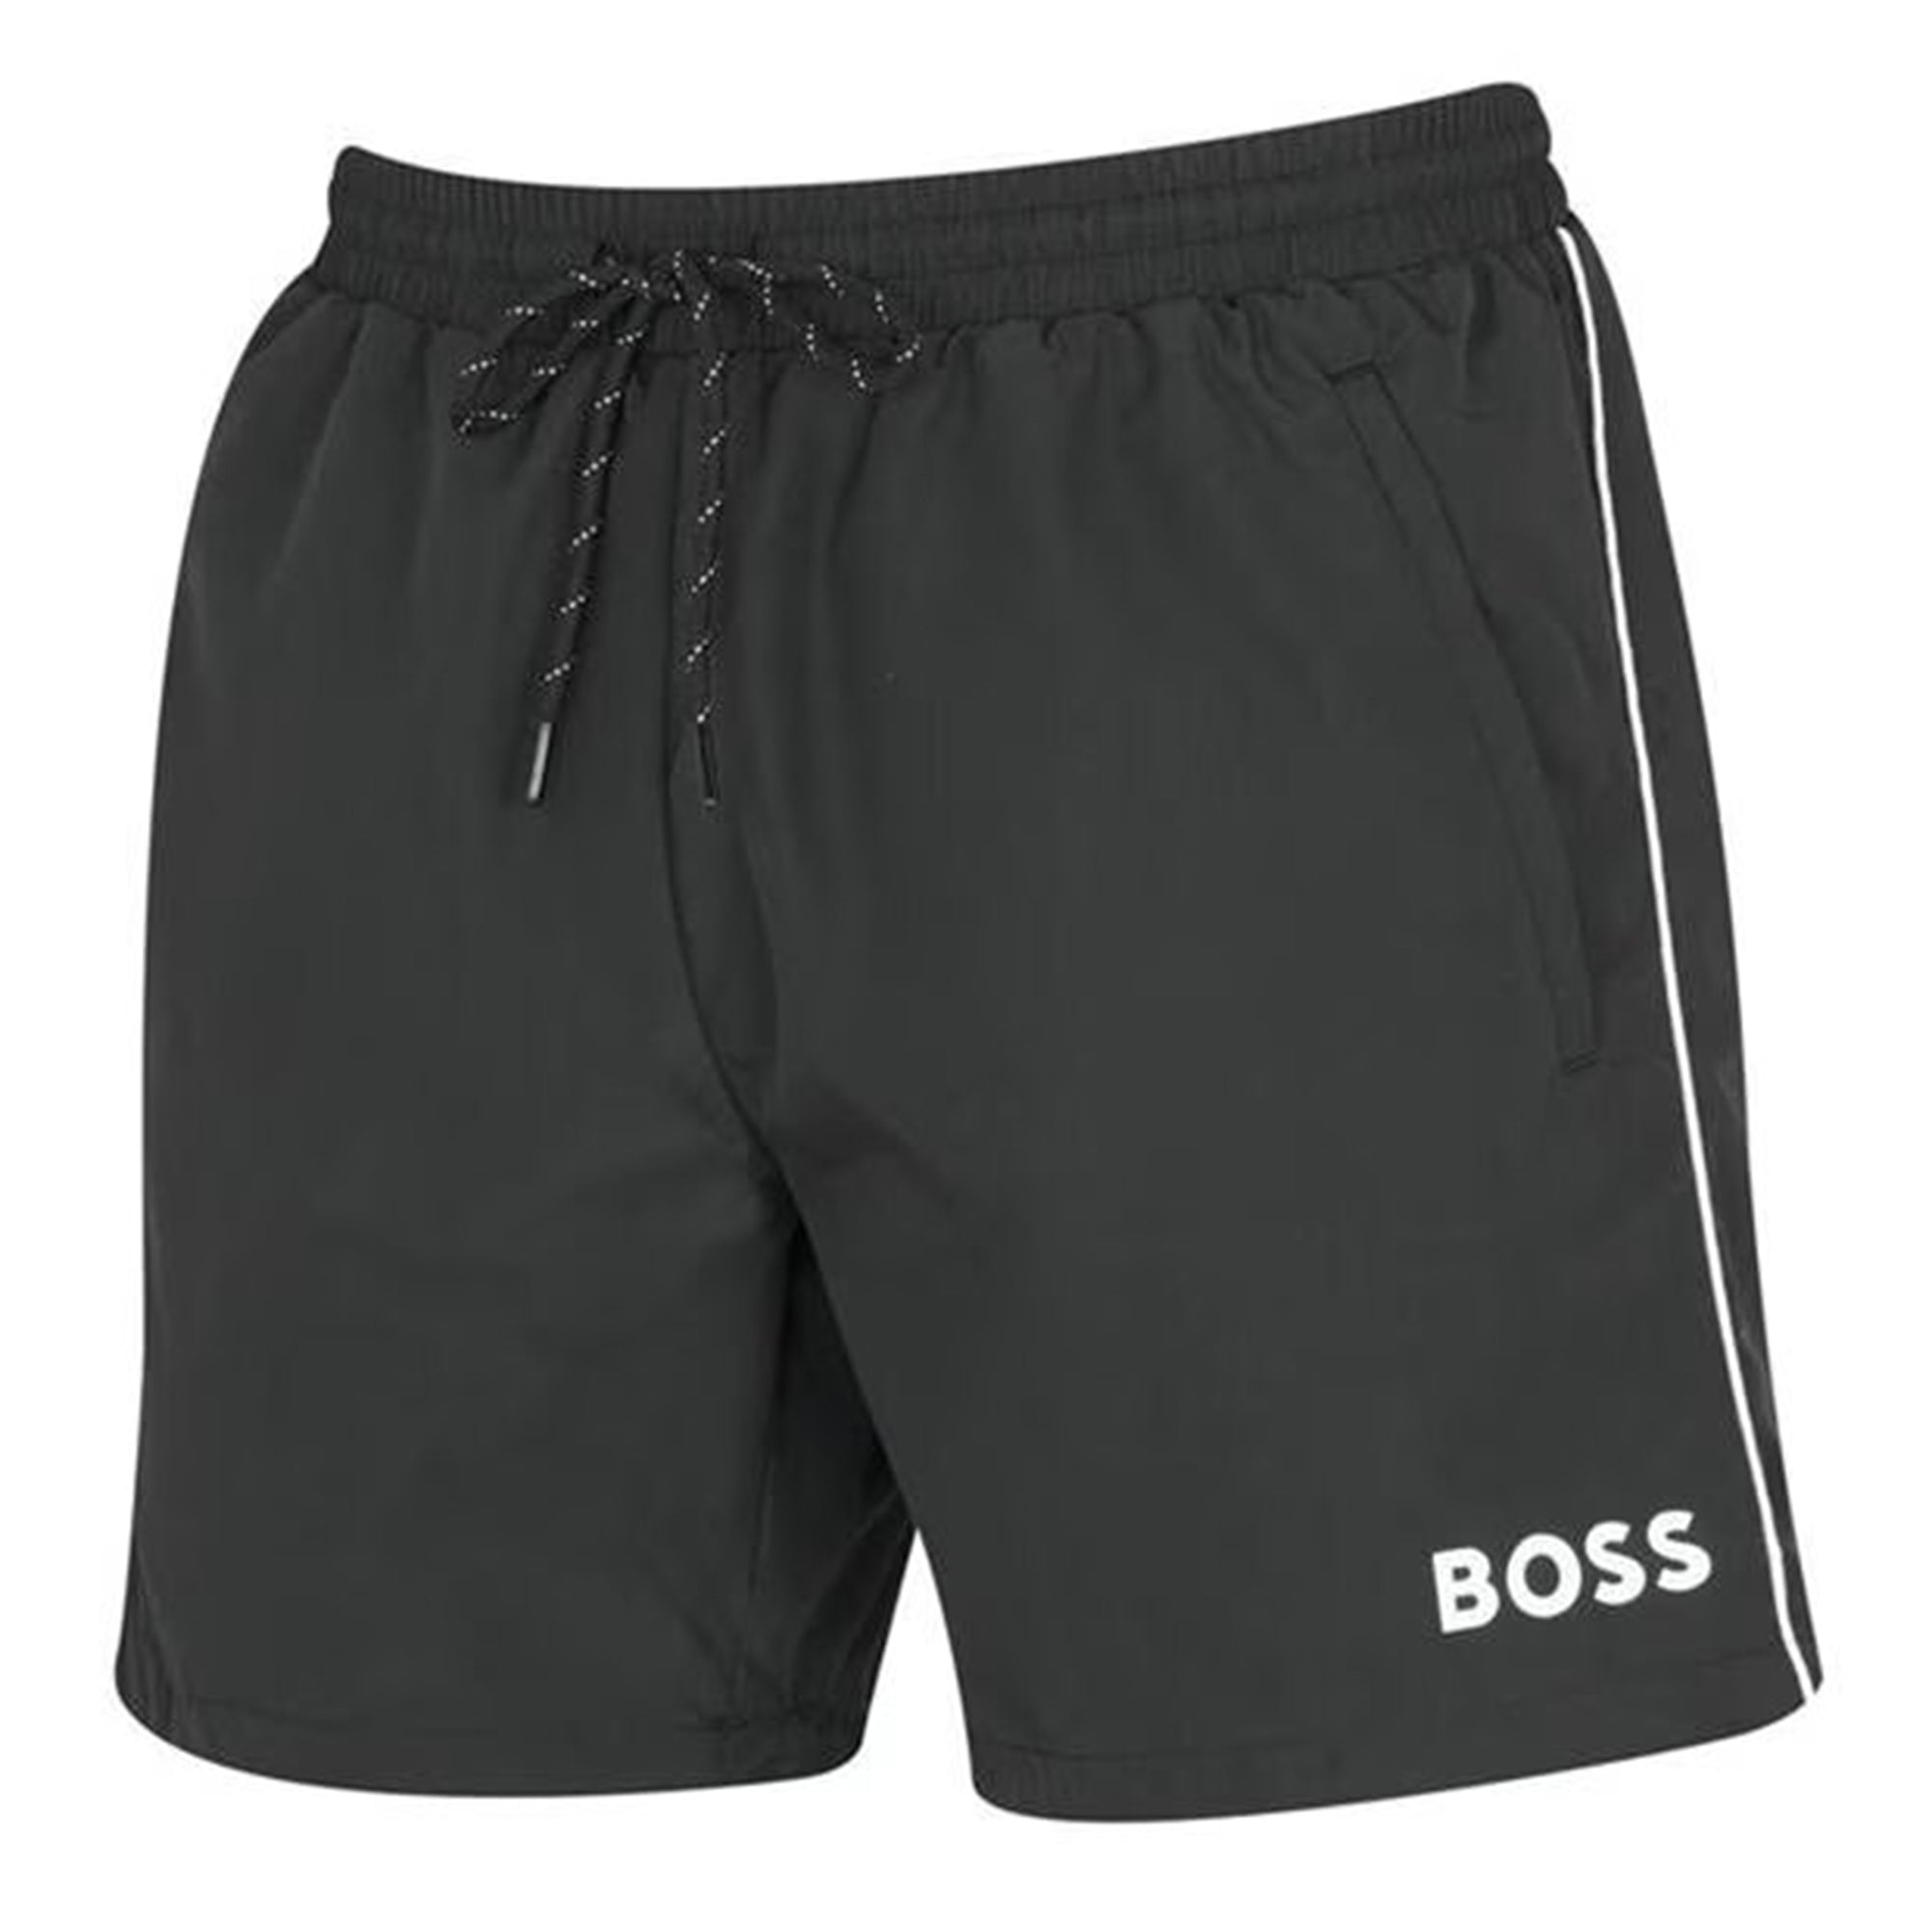 Boss Mens Swim Shorts Black Large